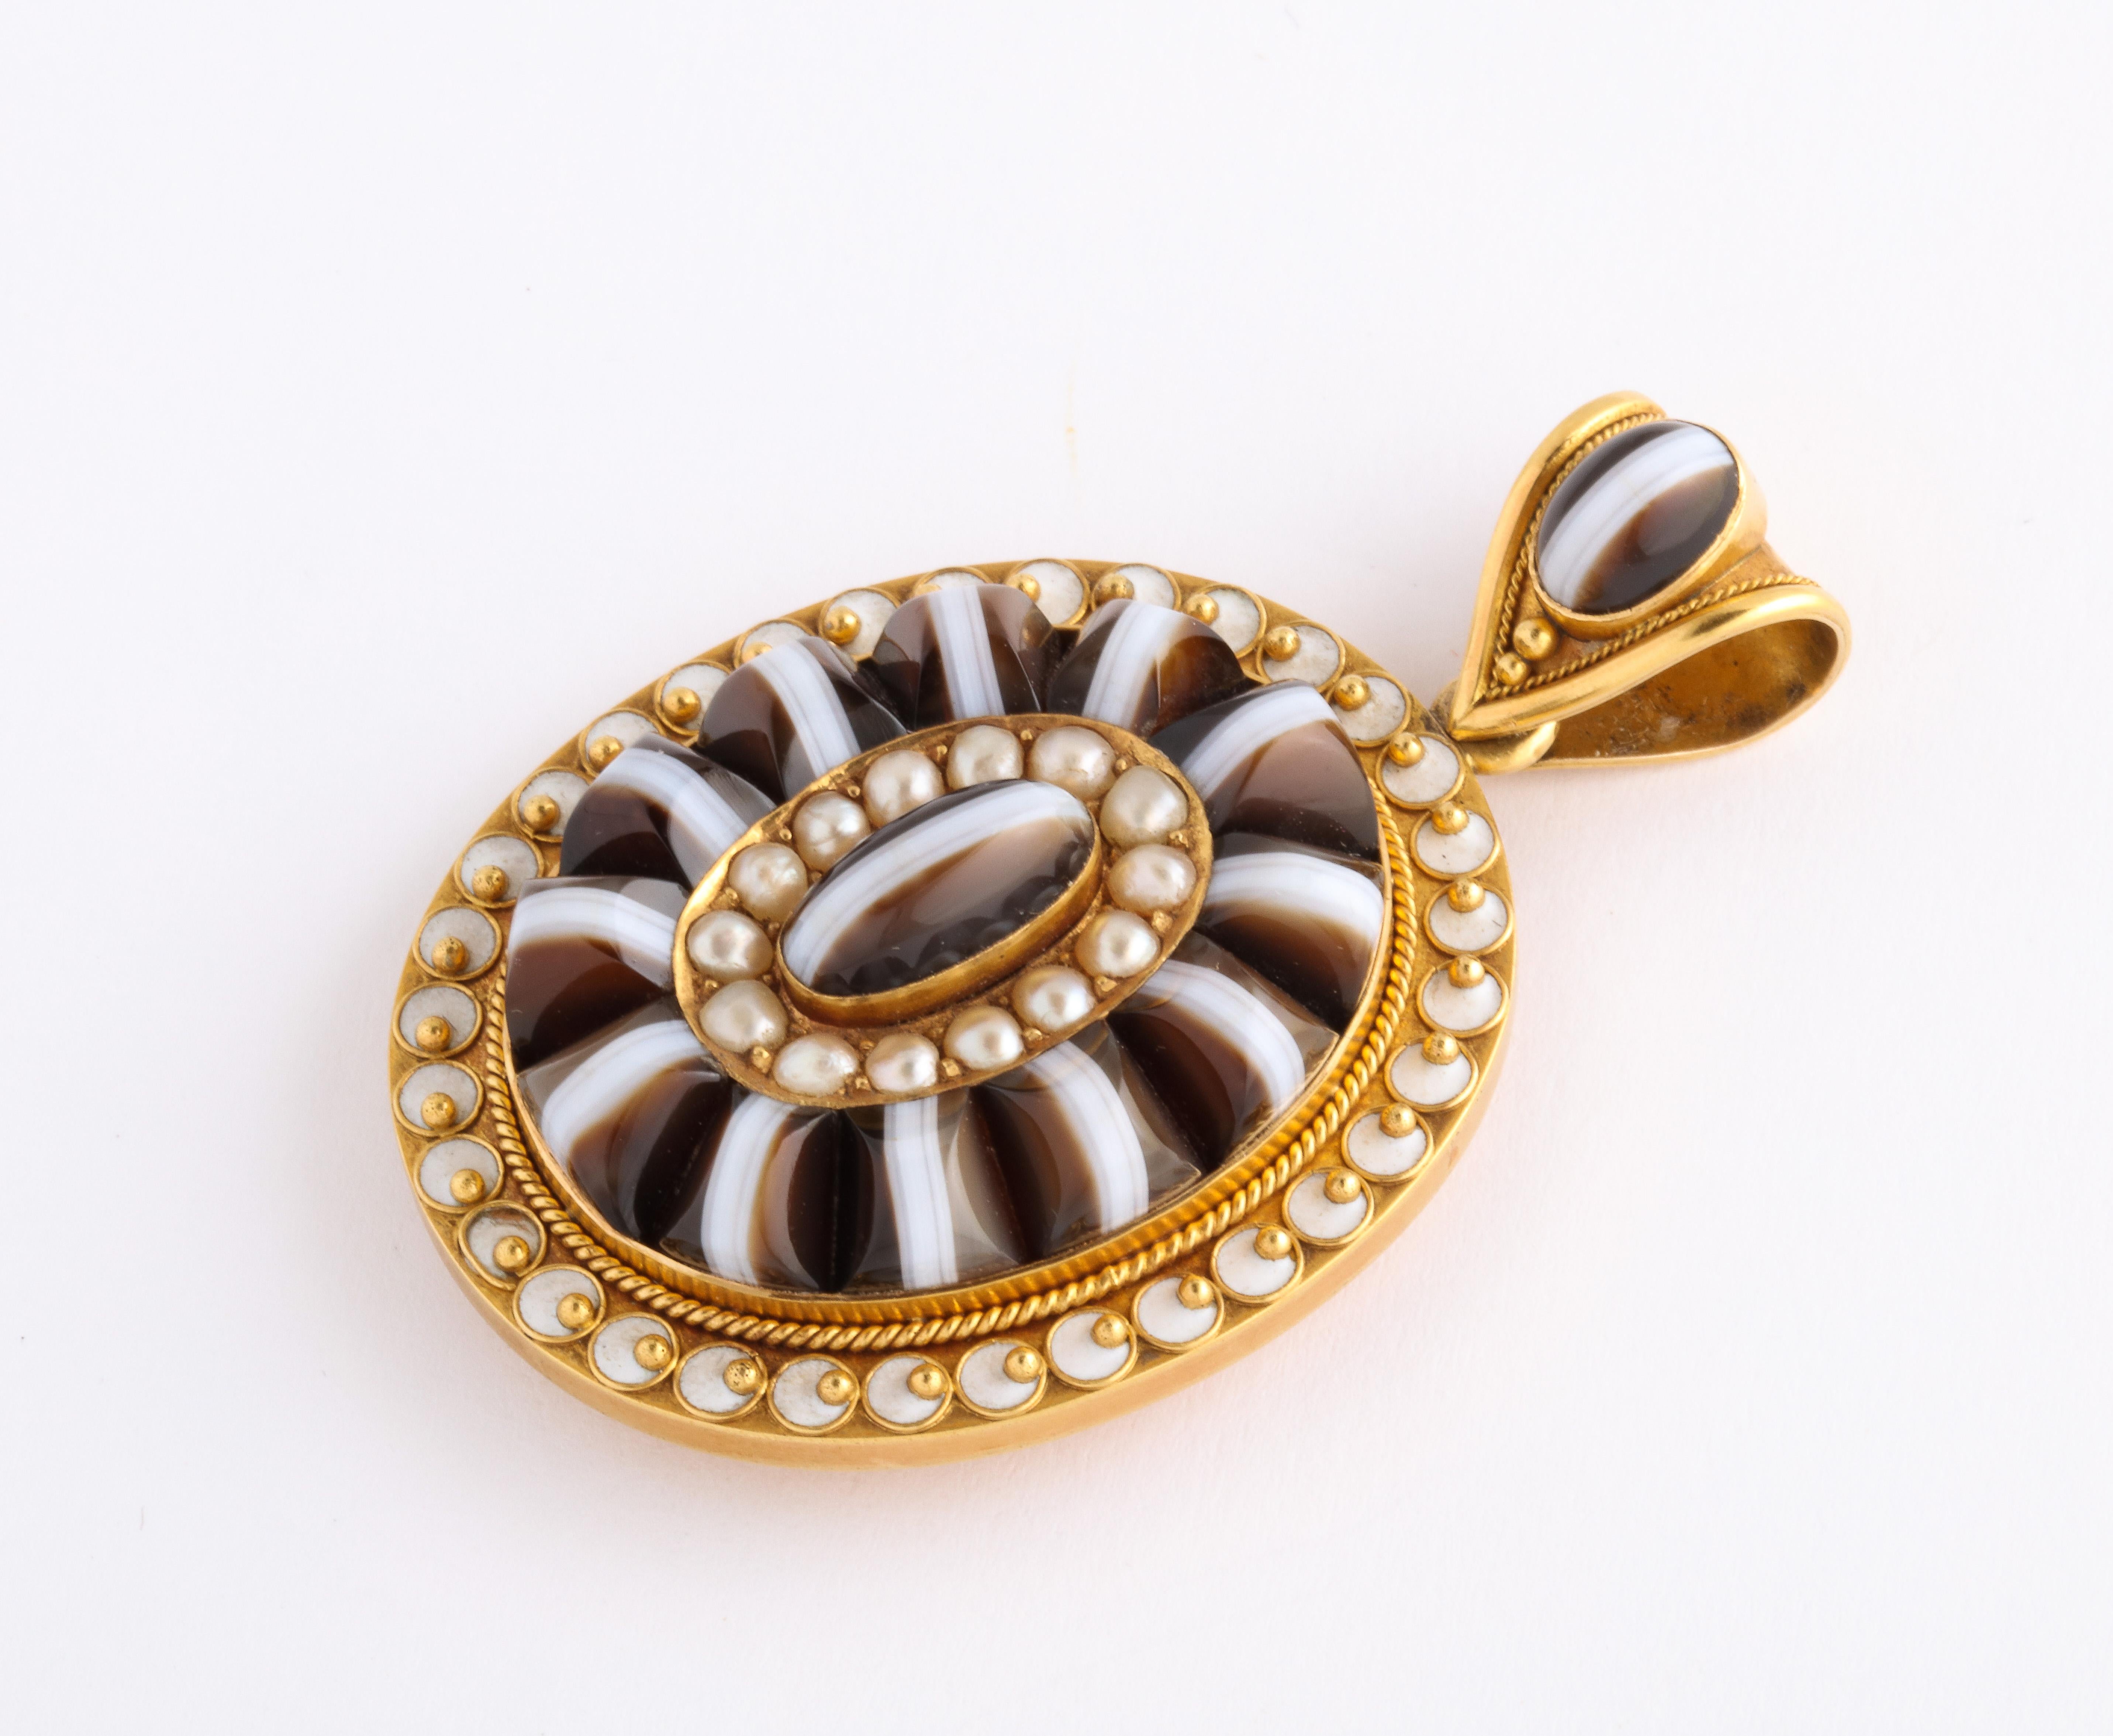 Le spectaculaire pendentif victorien en or 15 carats, agate rubanée, perle naturelle et émail, crie sa rareté et sa beauté sans être effronté, mais avec insistance. Toutes les pièces sont d'origine du maître bijoutier qui l'a créé vers 1860-70. Les